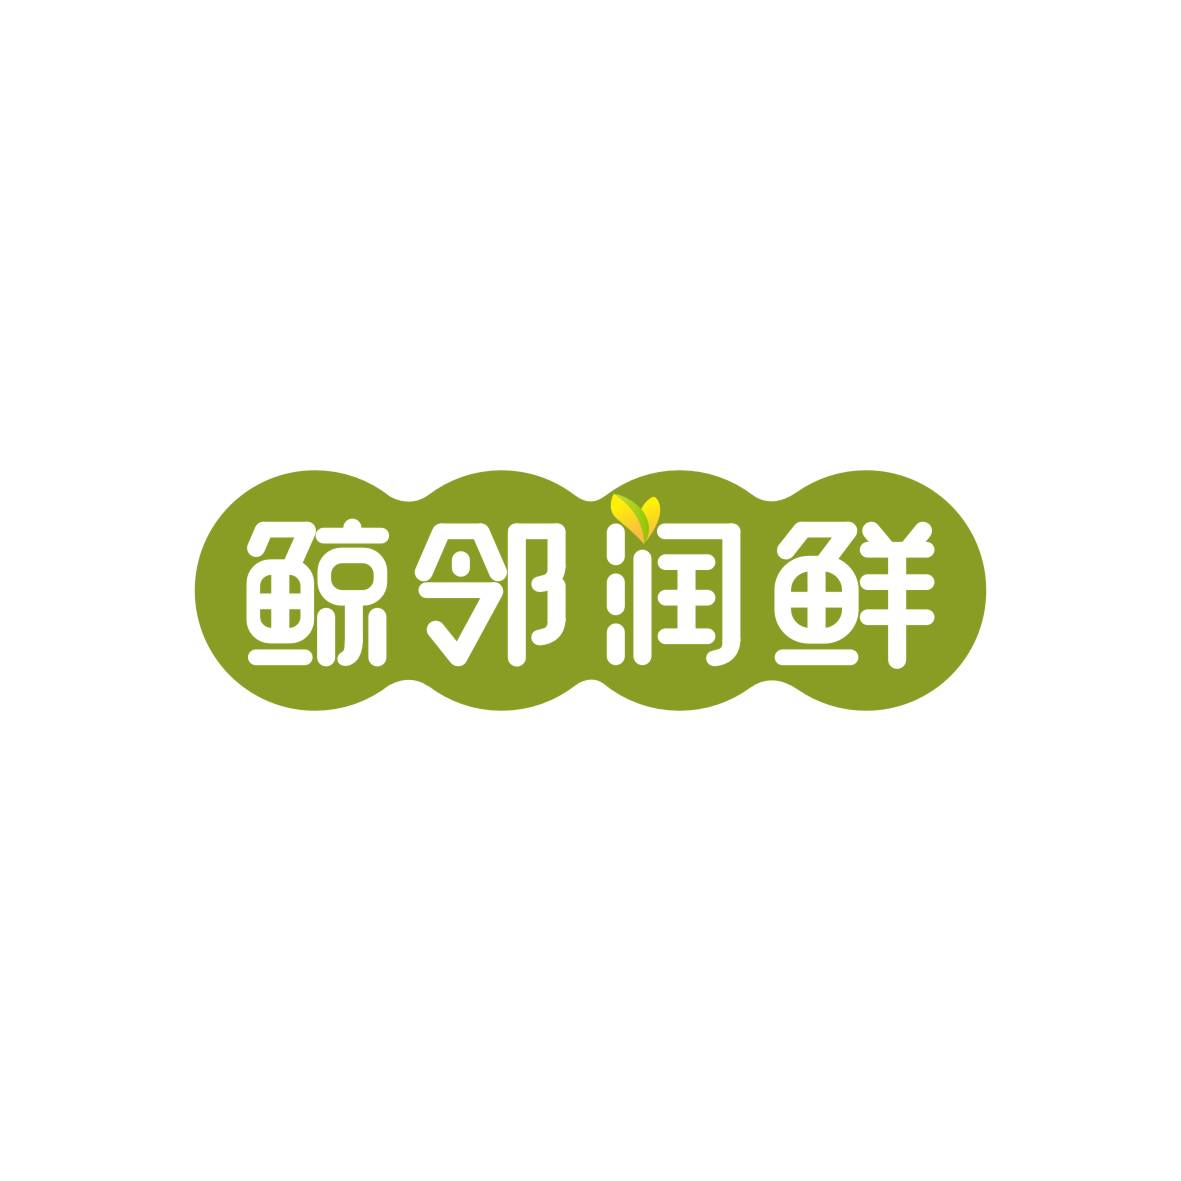 广州市君衍电子商务商行商标鲸邻润鲜（31类）商标转让多少钱？